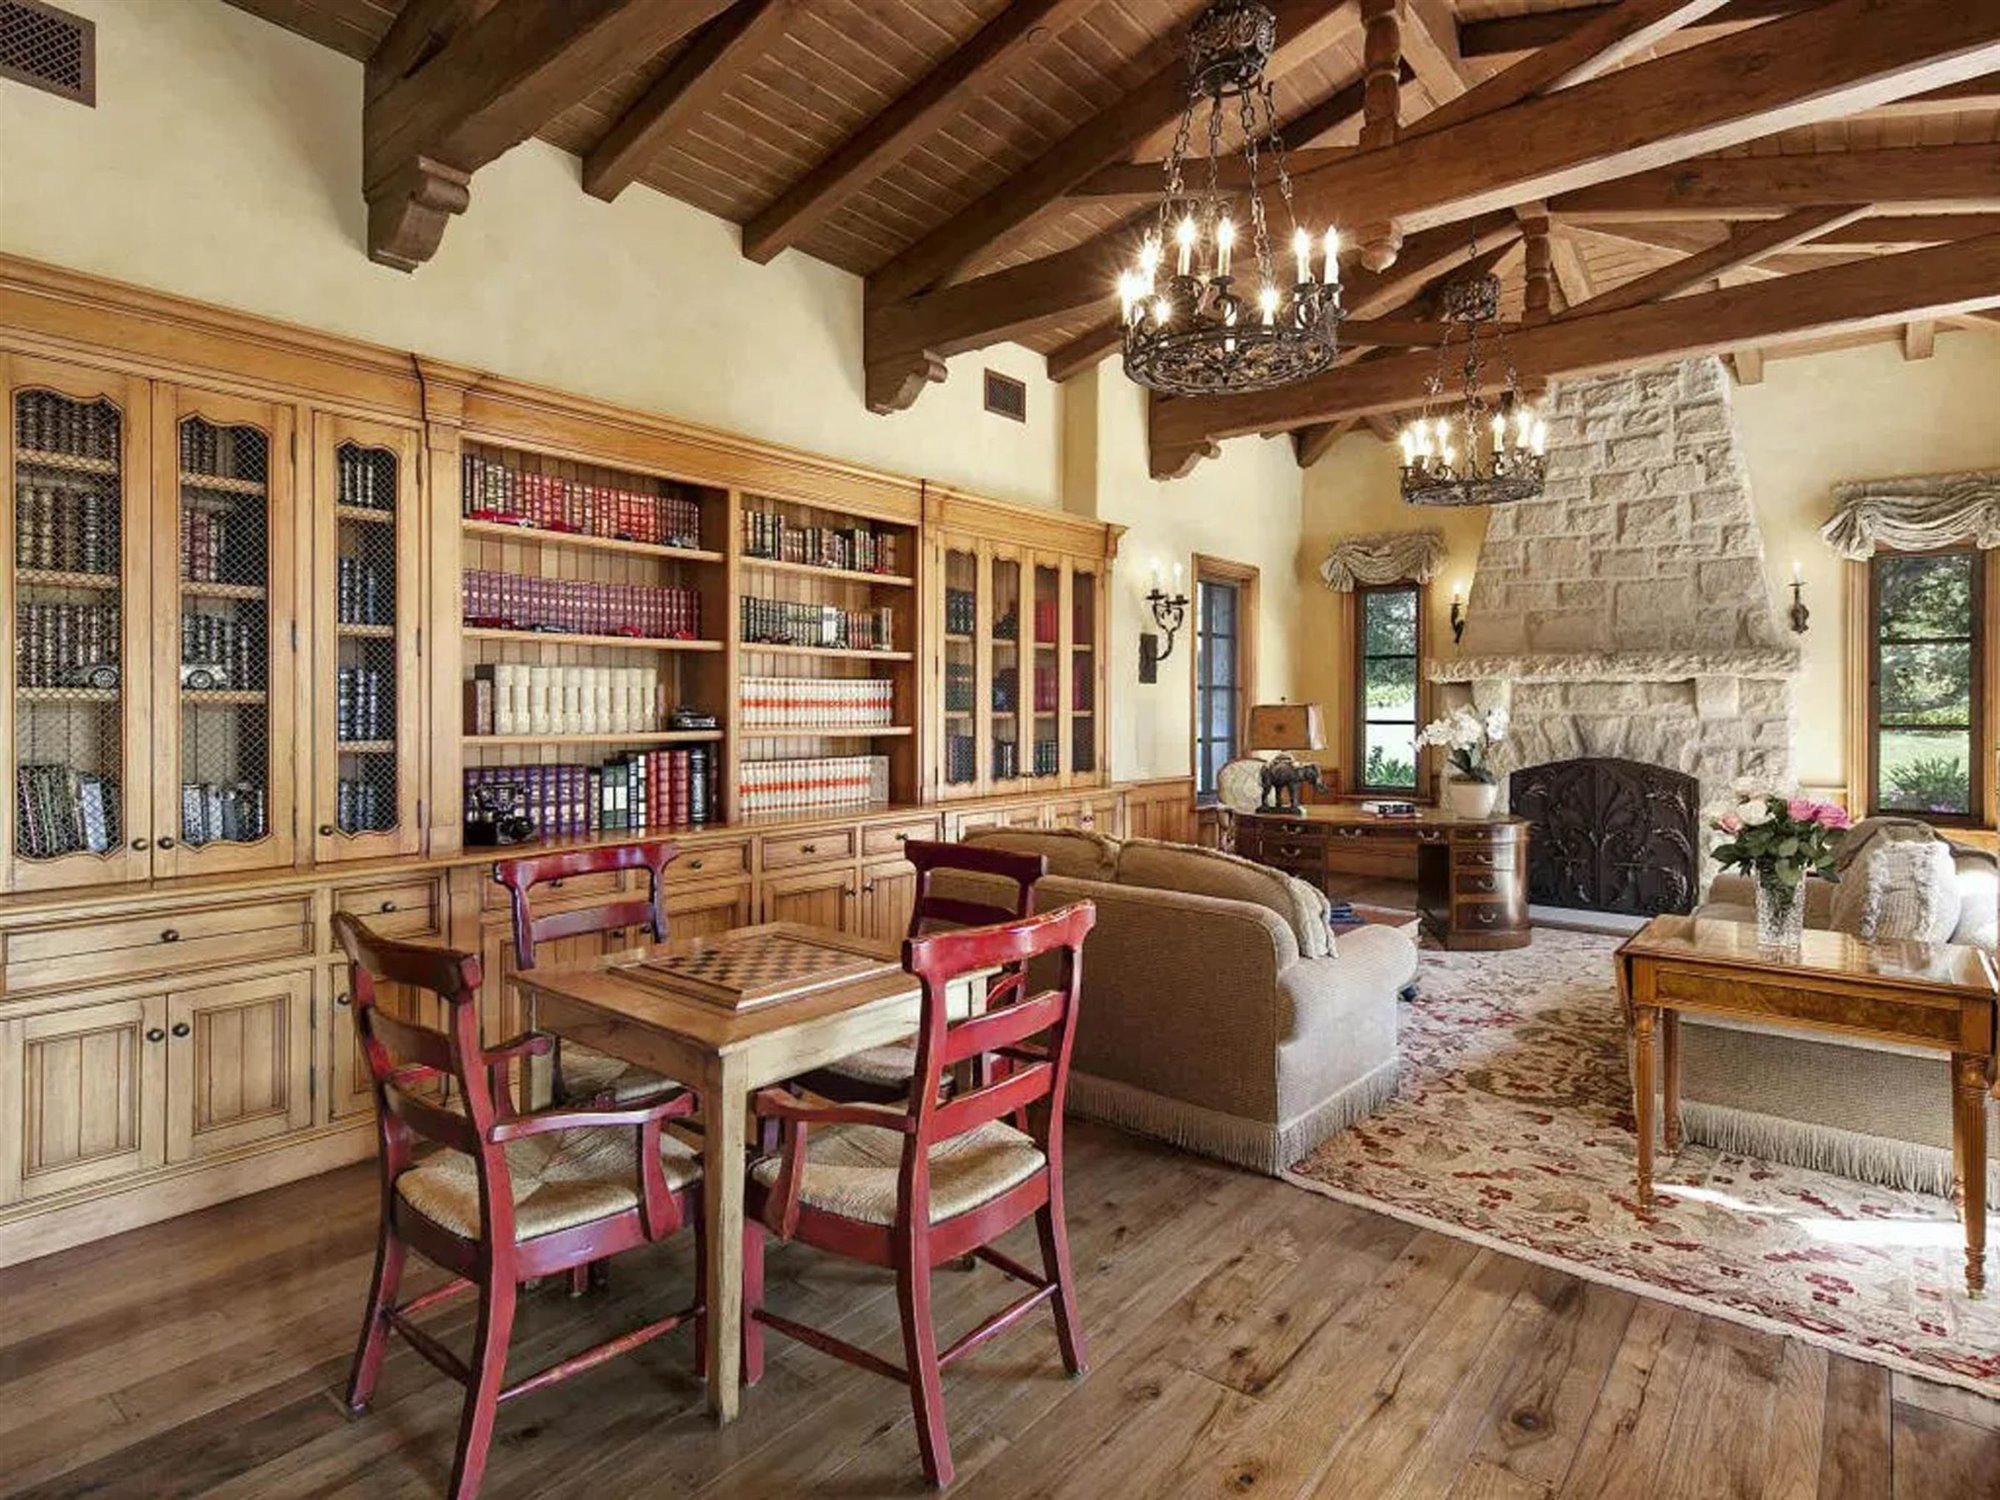 Comedor y salon con chimenea  de la casa en Montecito del principe Harry y Meghan Markle